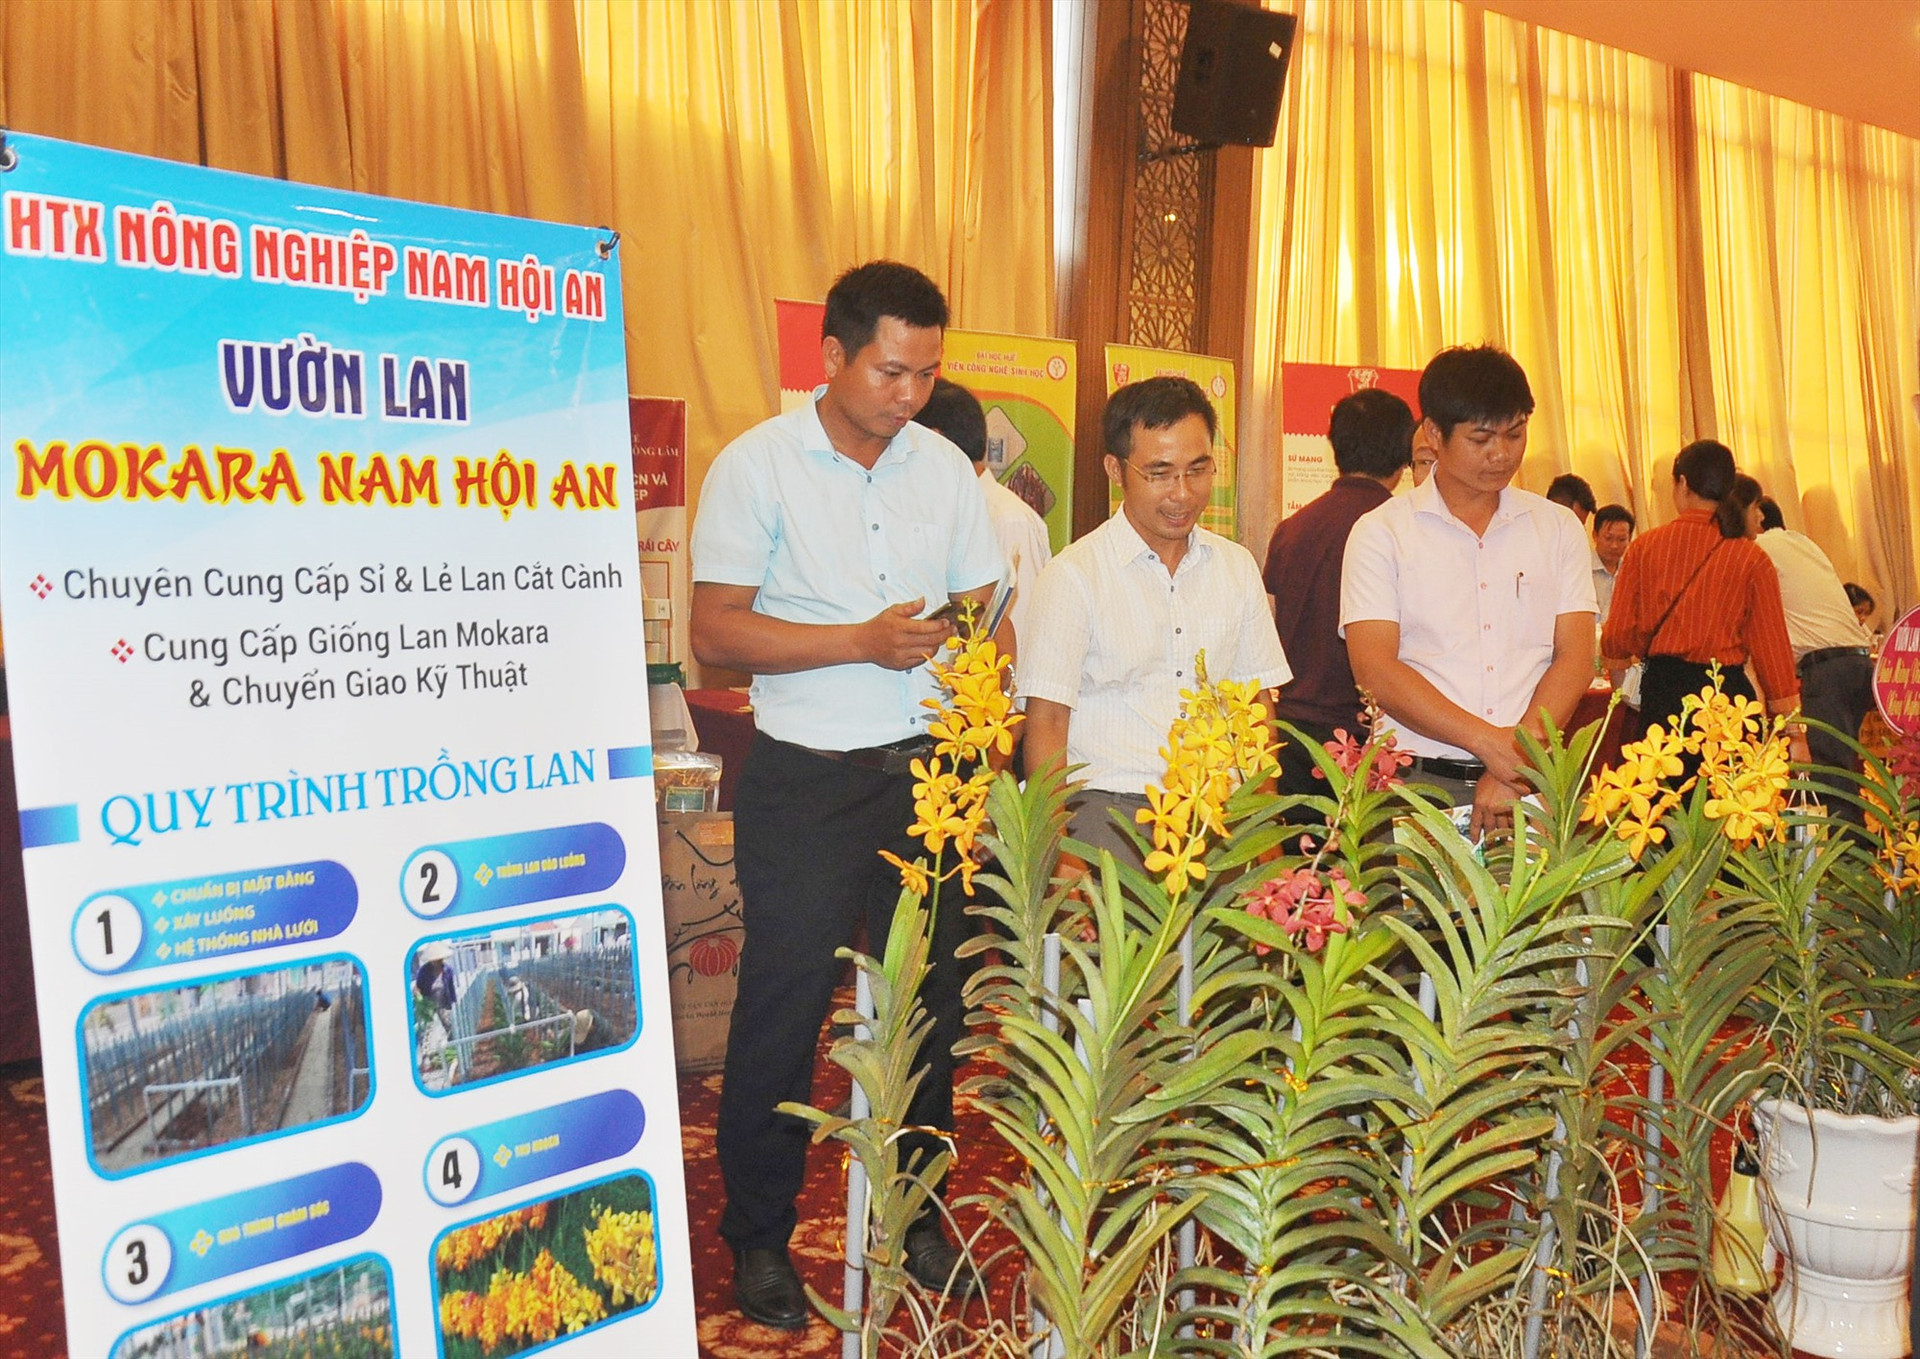 Dự án khởi nghiệp “Vườn lan Mokara Nam Hội An” của HTX Nông nghiệp Nam Hội An tham gia giới thiệu tại một sự kiện về khởi nghiệp nông nghiệp trên địa bàn tỉnh. Ảnh: Đ.N